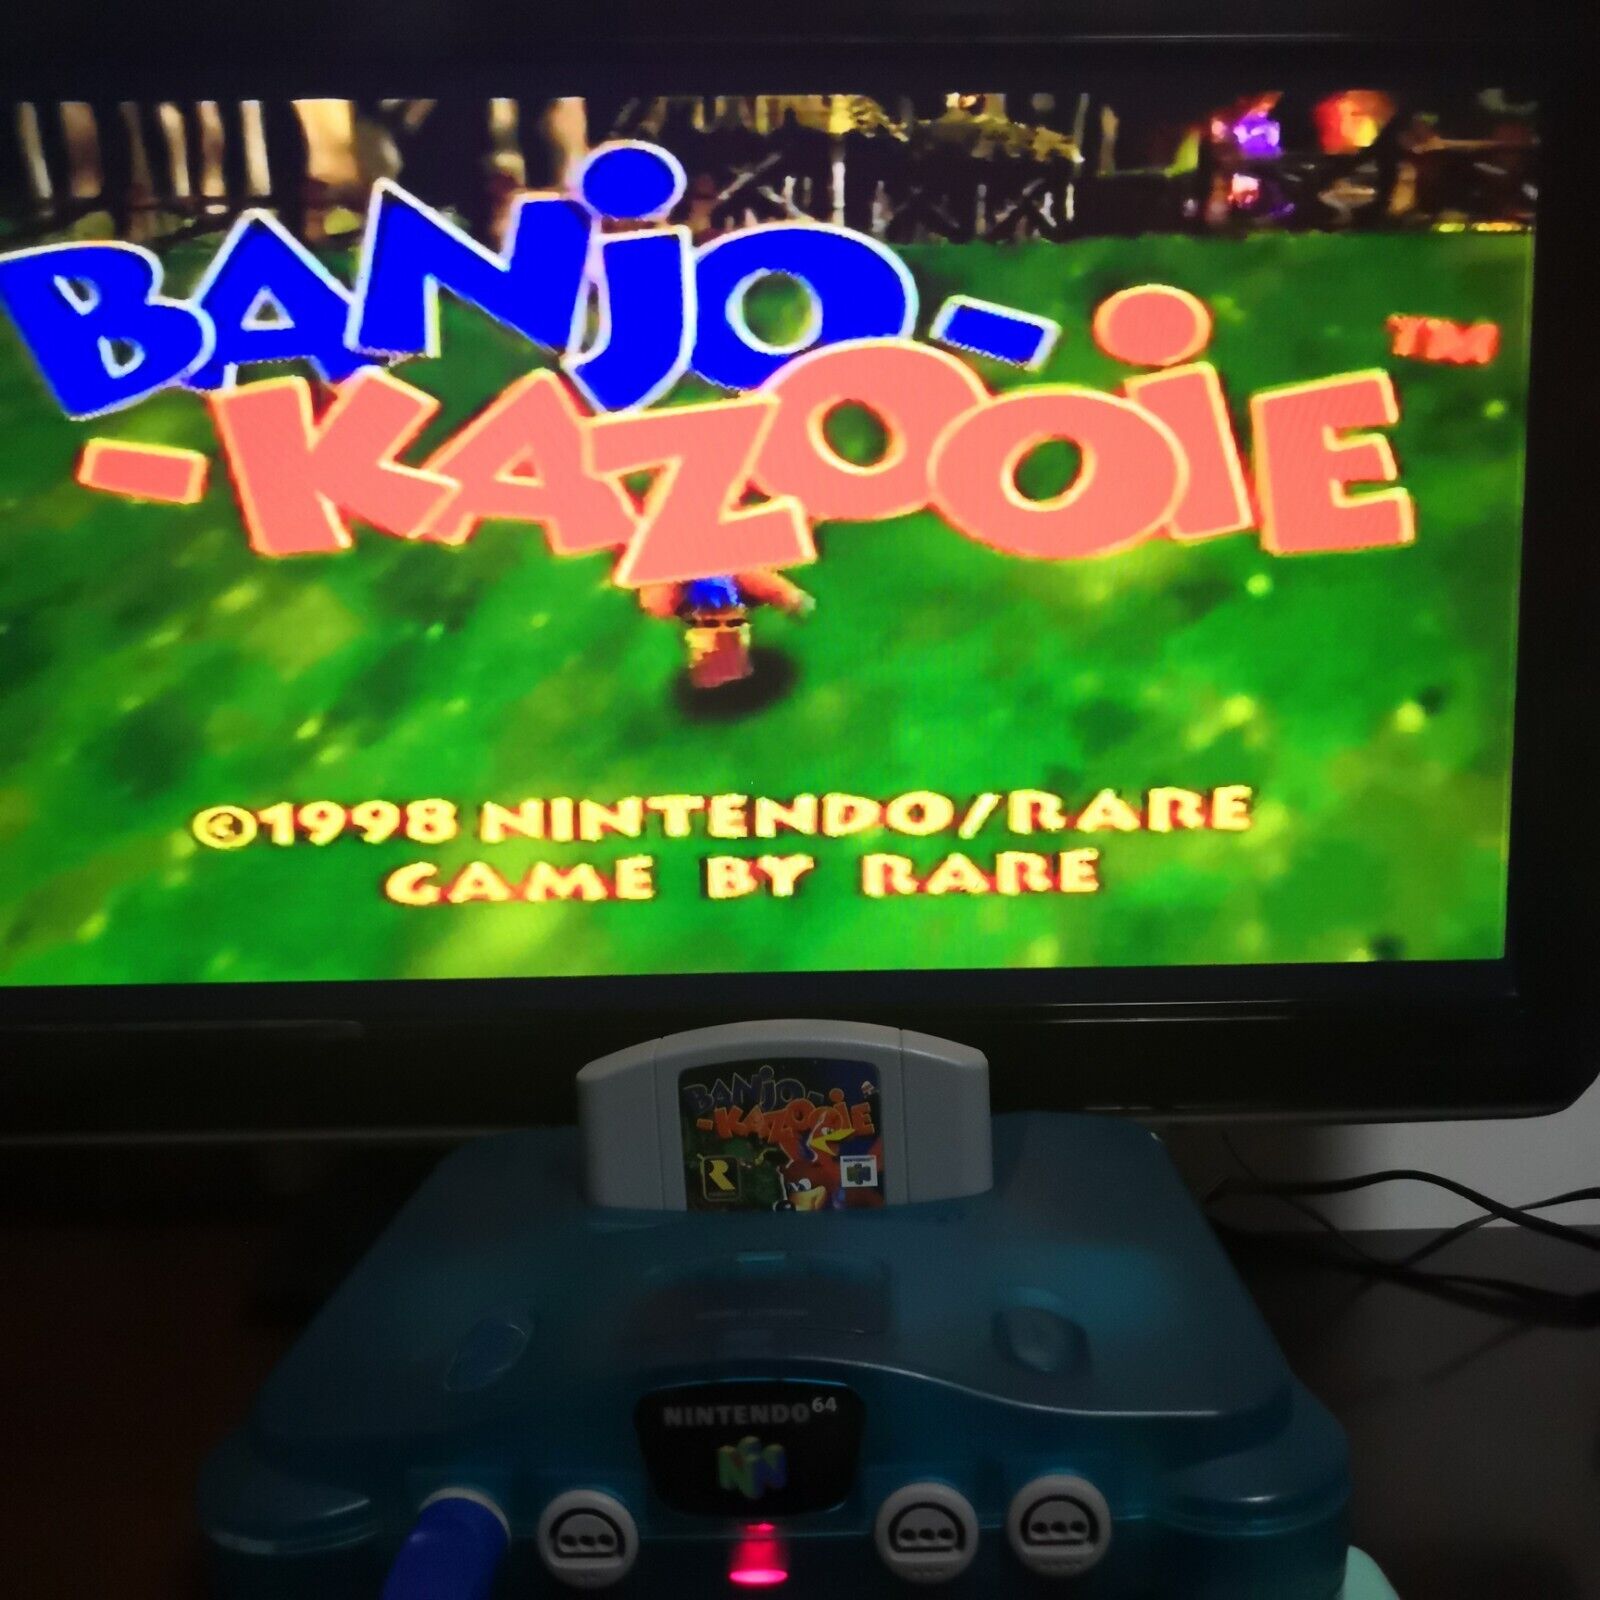 Nintendo 64 Banjo Kazooie FR Box 